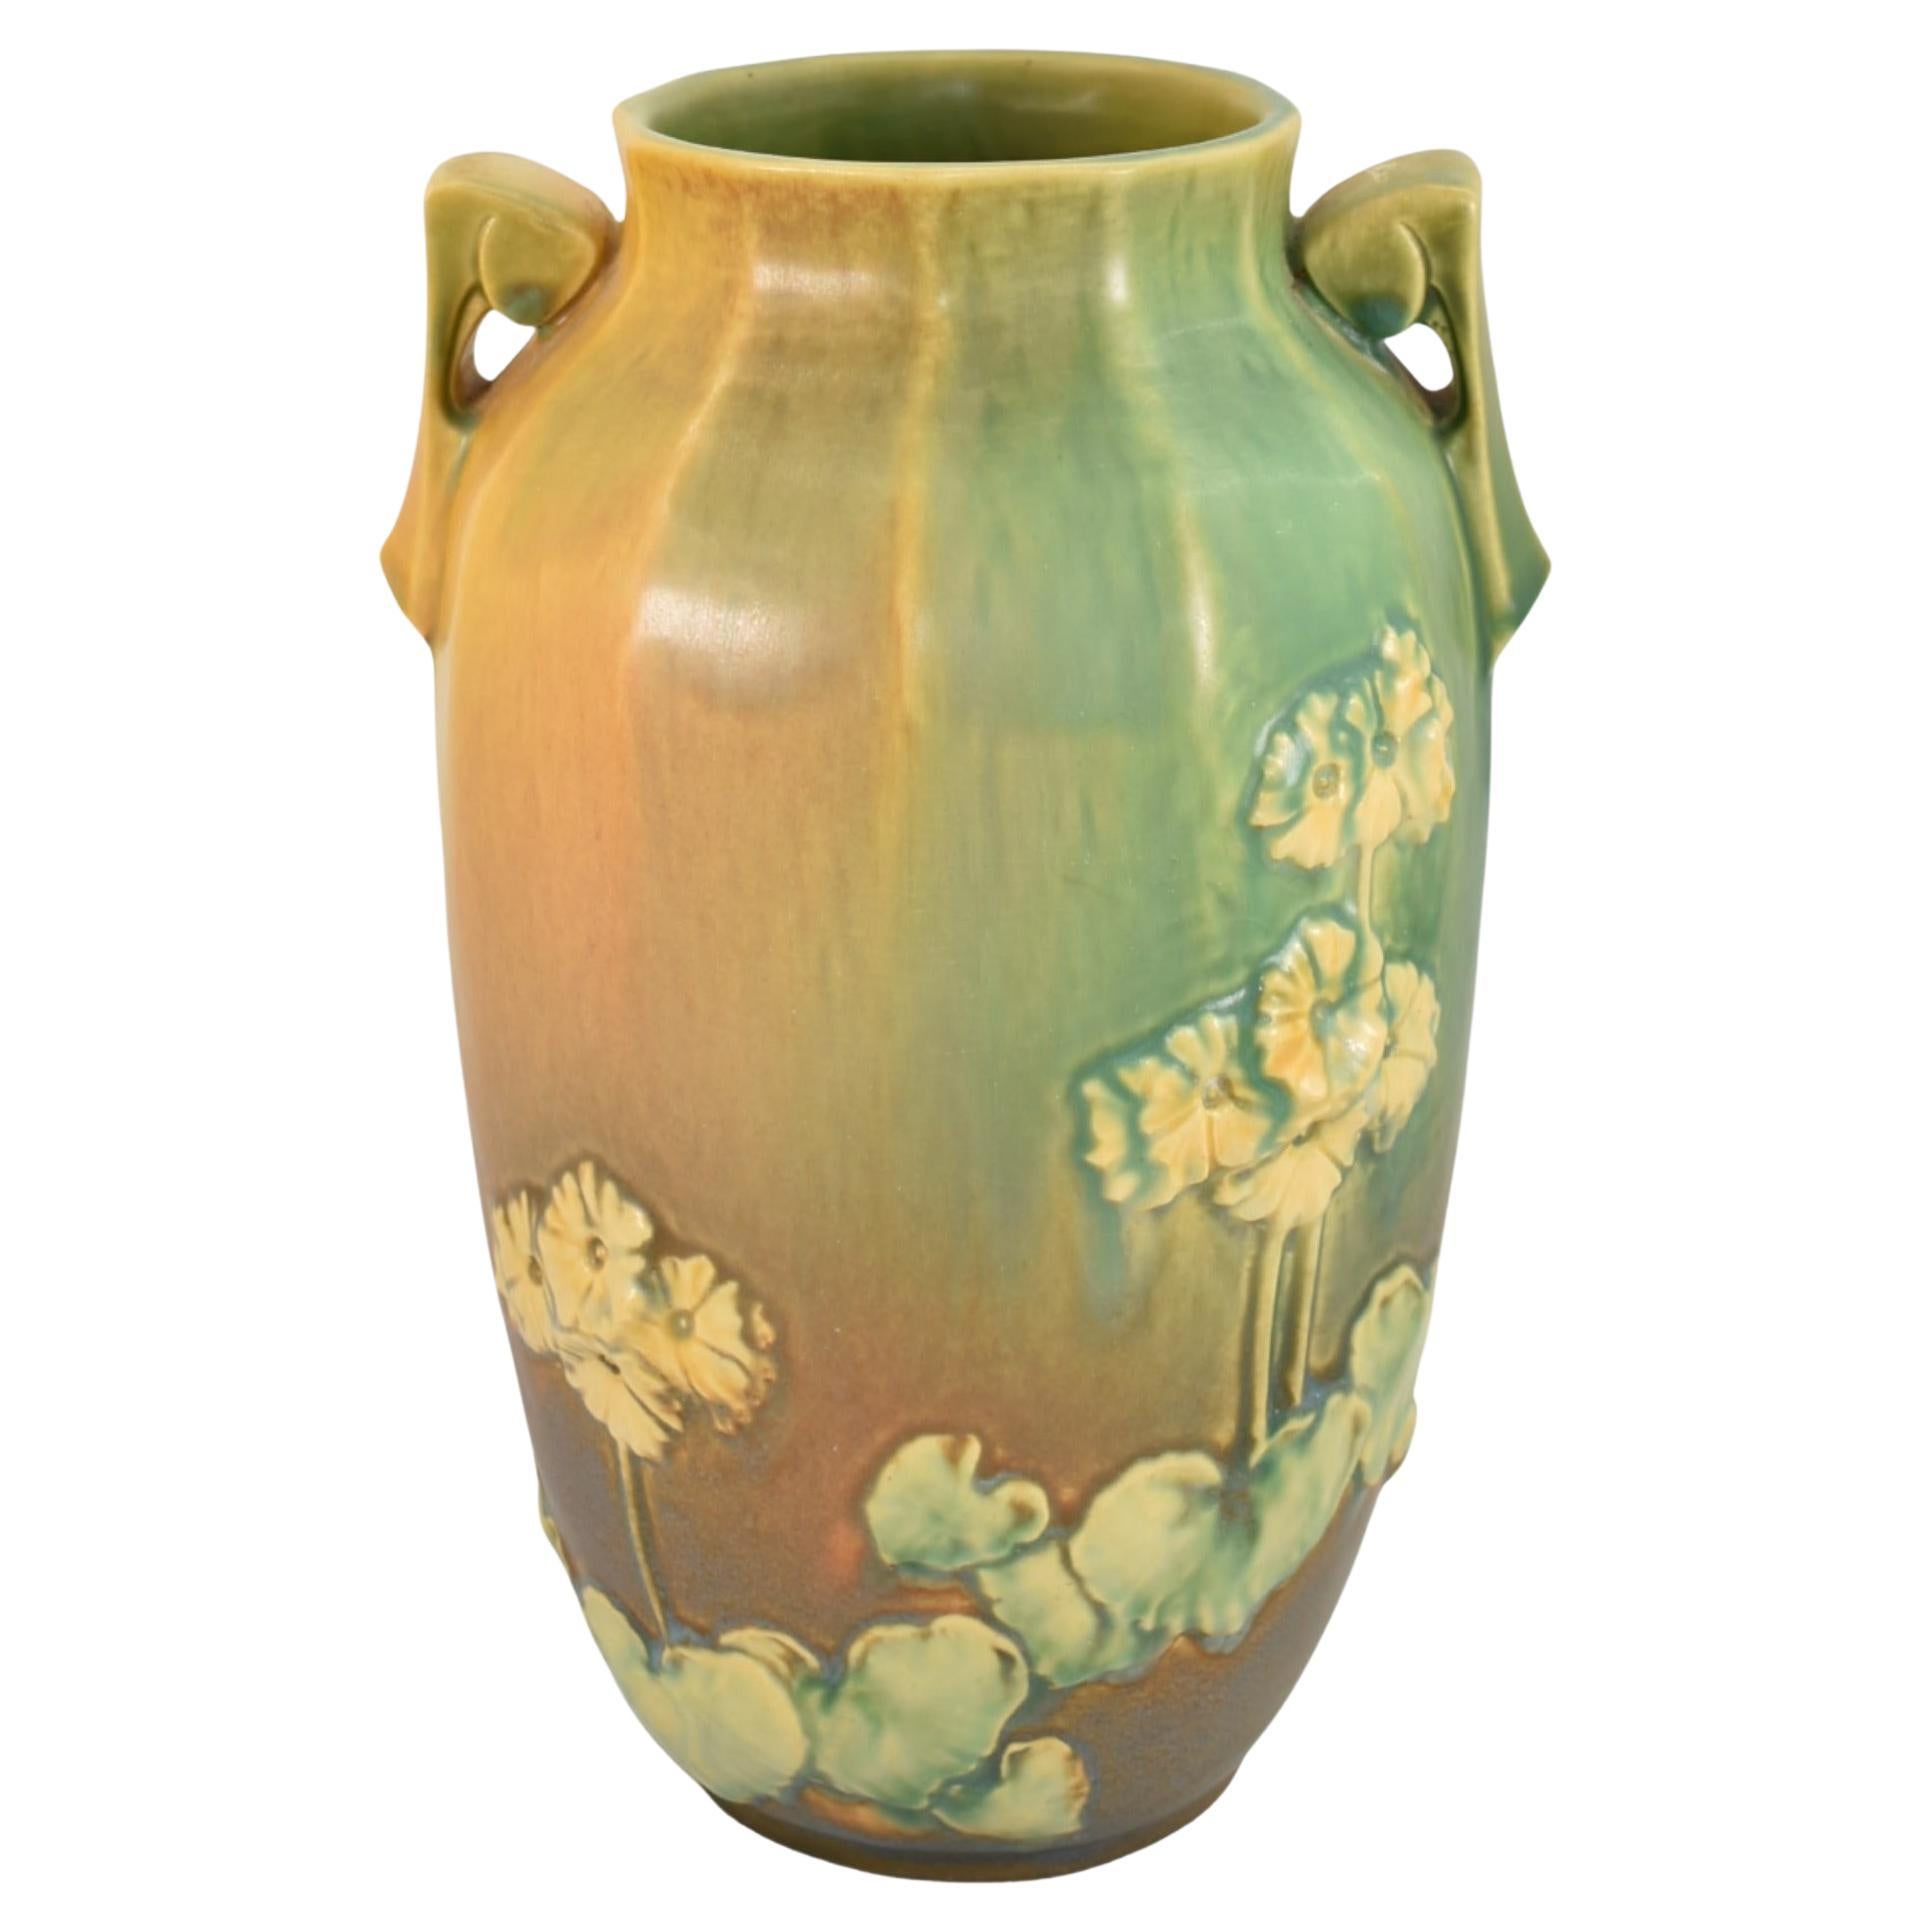 Roseville Primrose Experimental Trial Glaze 1936 Vintage Pottery Ceramic Vase For Sale